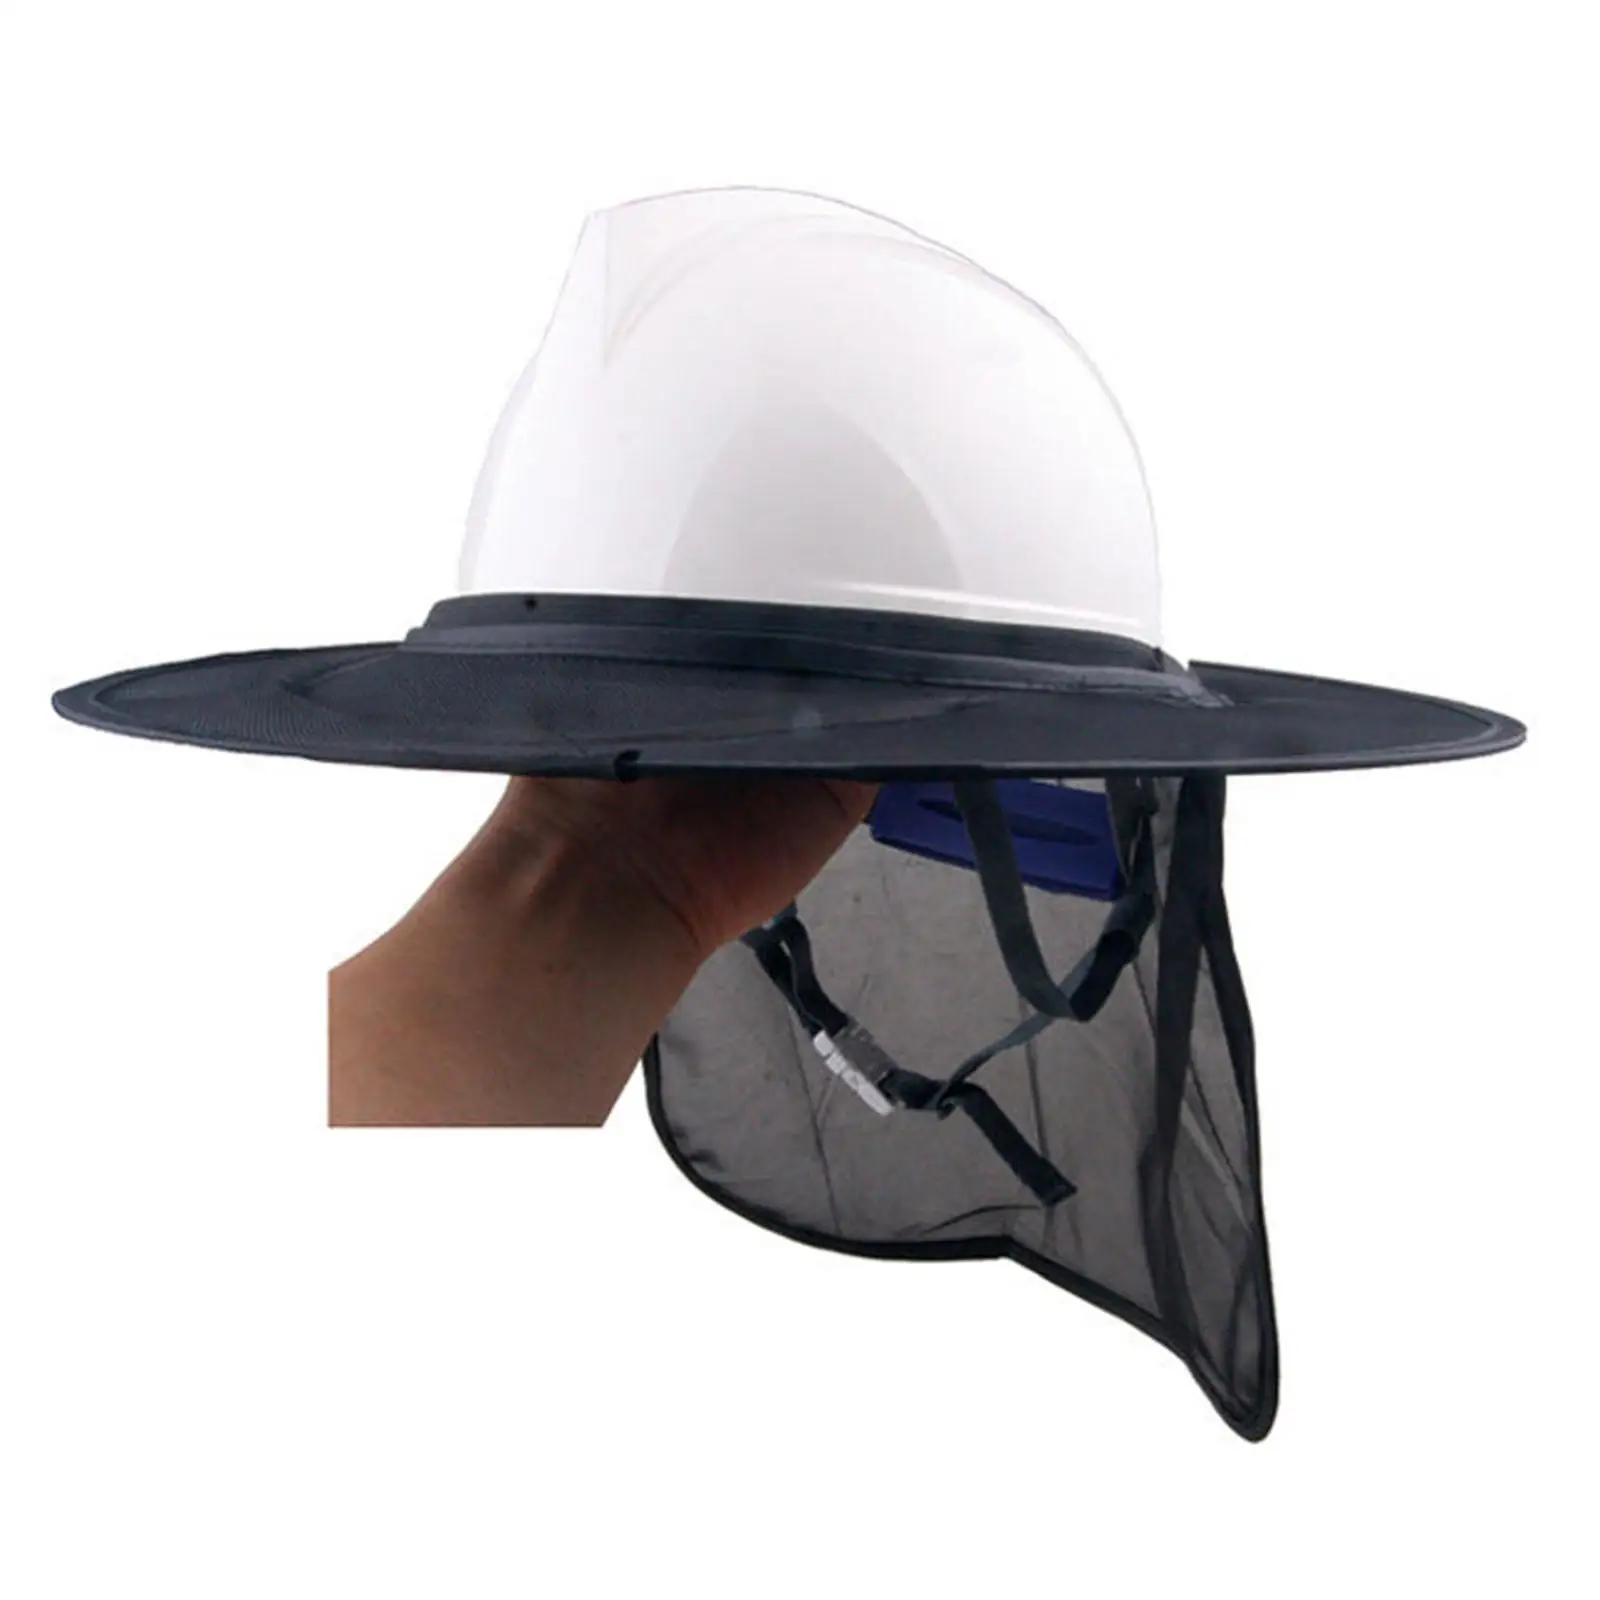 Жесткая шляпа. Шлем для защиты от солнца.